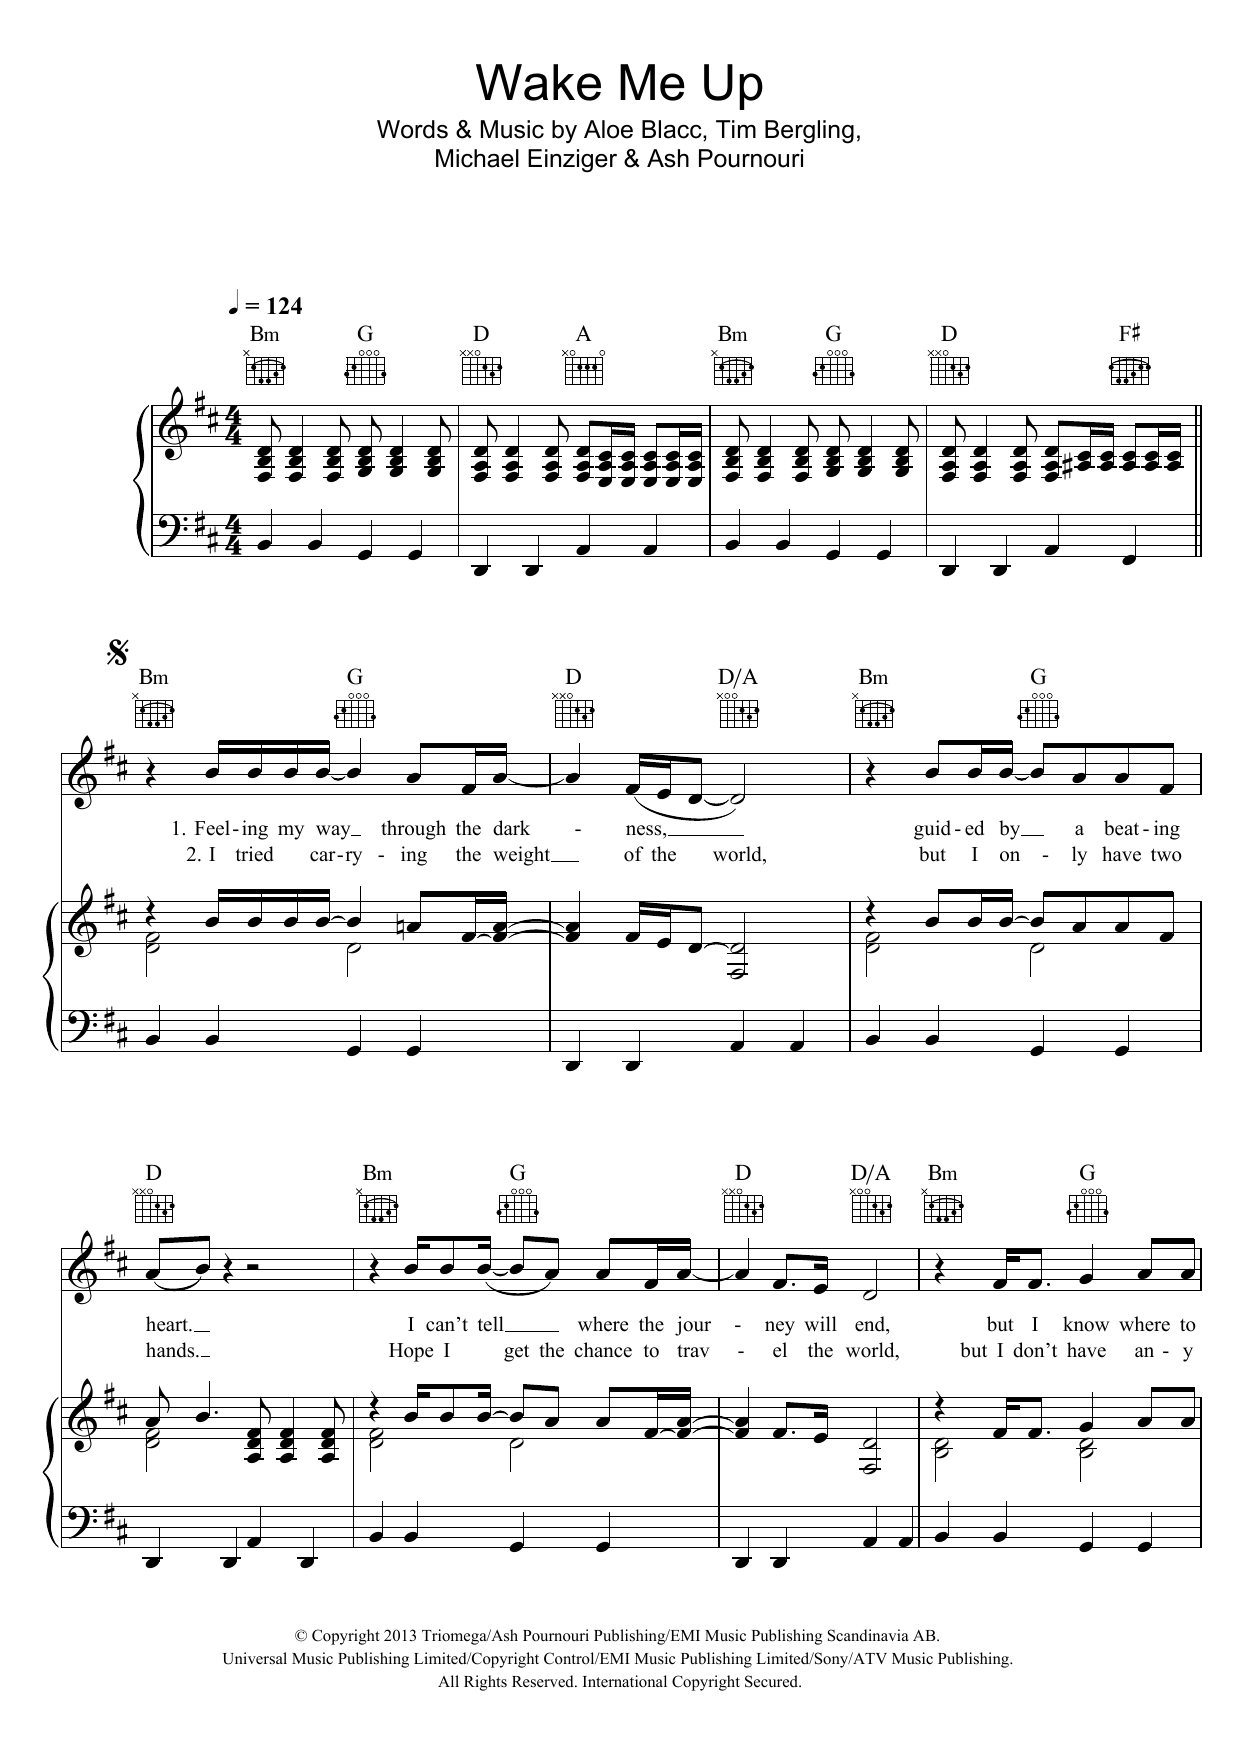 Traktat falanks deformation Avicii "Wake Me Up" Sheet Music | Download PDF Score 451737